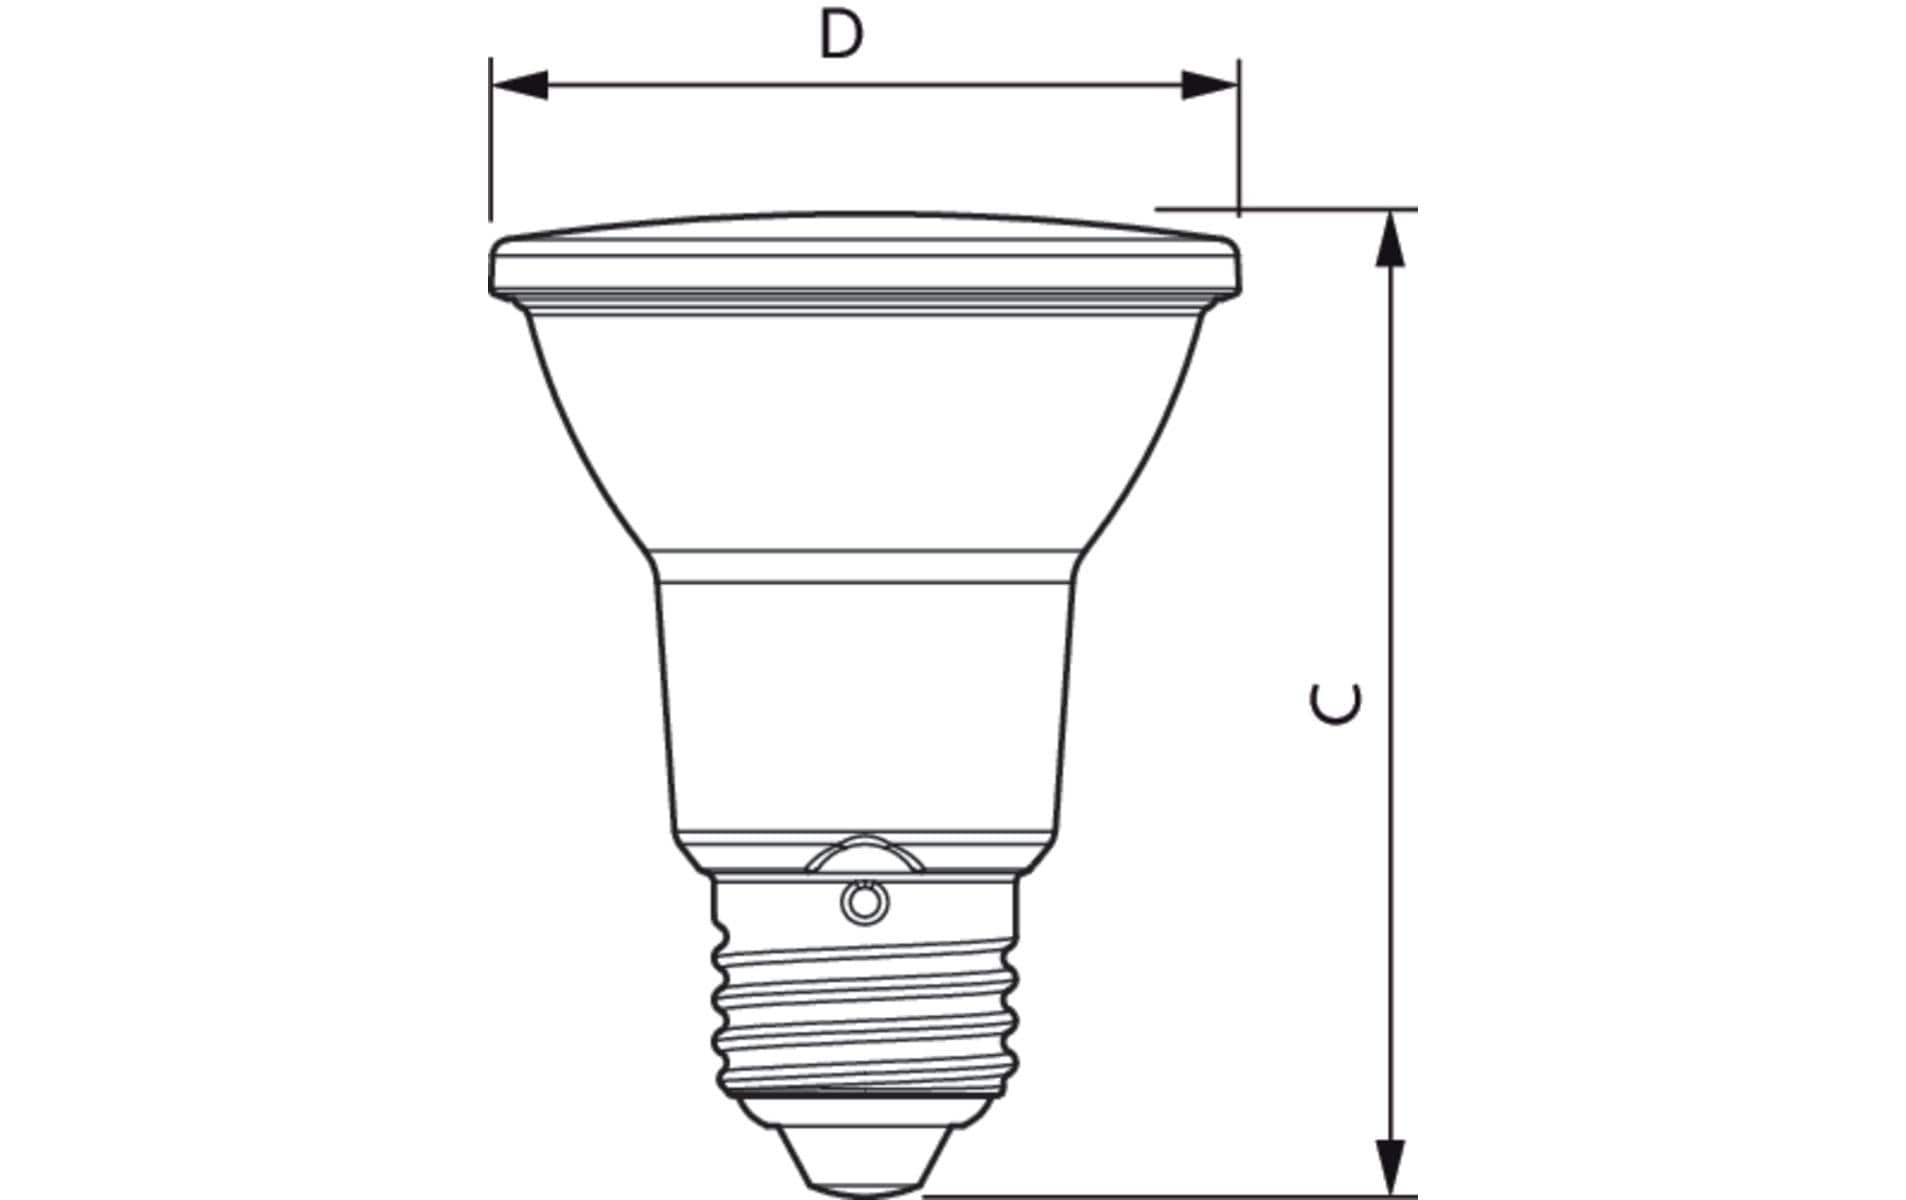 Philips Professional Lampe MAS LEDspot VLE D 6-50W 927 PAR20 25D